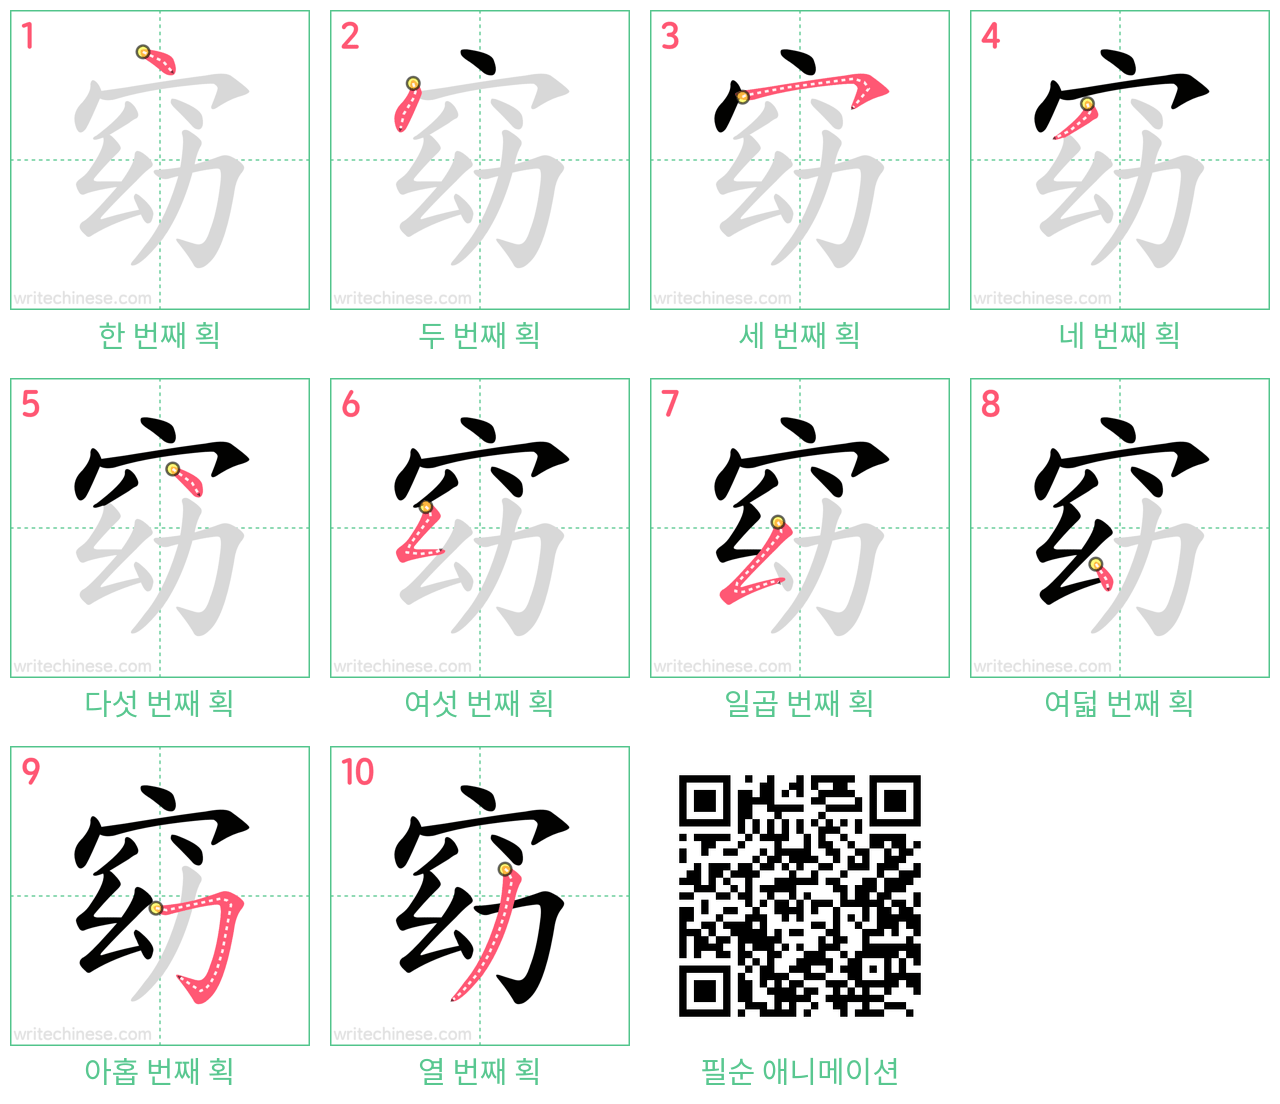 窈 step-by-step stroke order diagrams